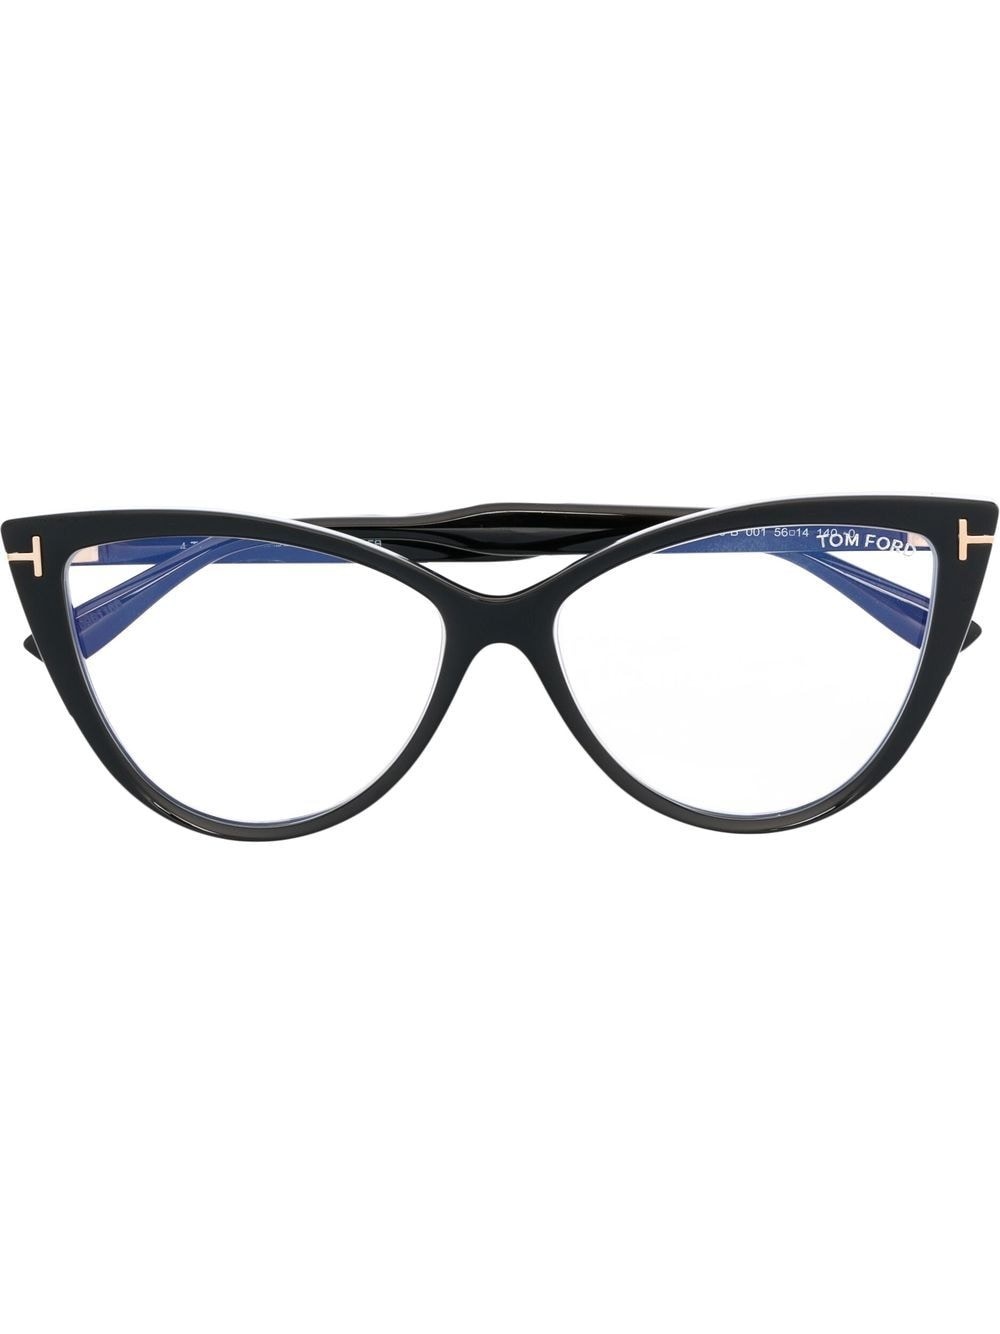 TOM FORD cat-eye frame glasses | REVERSIBLE